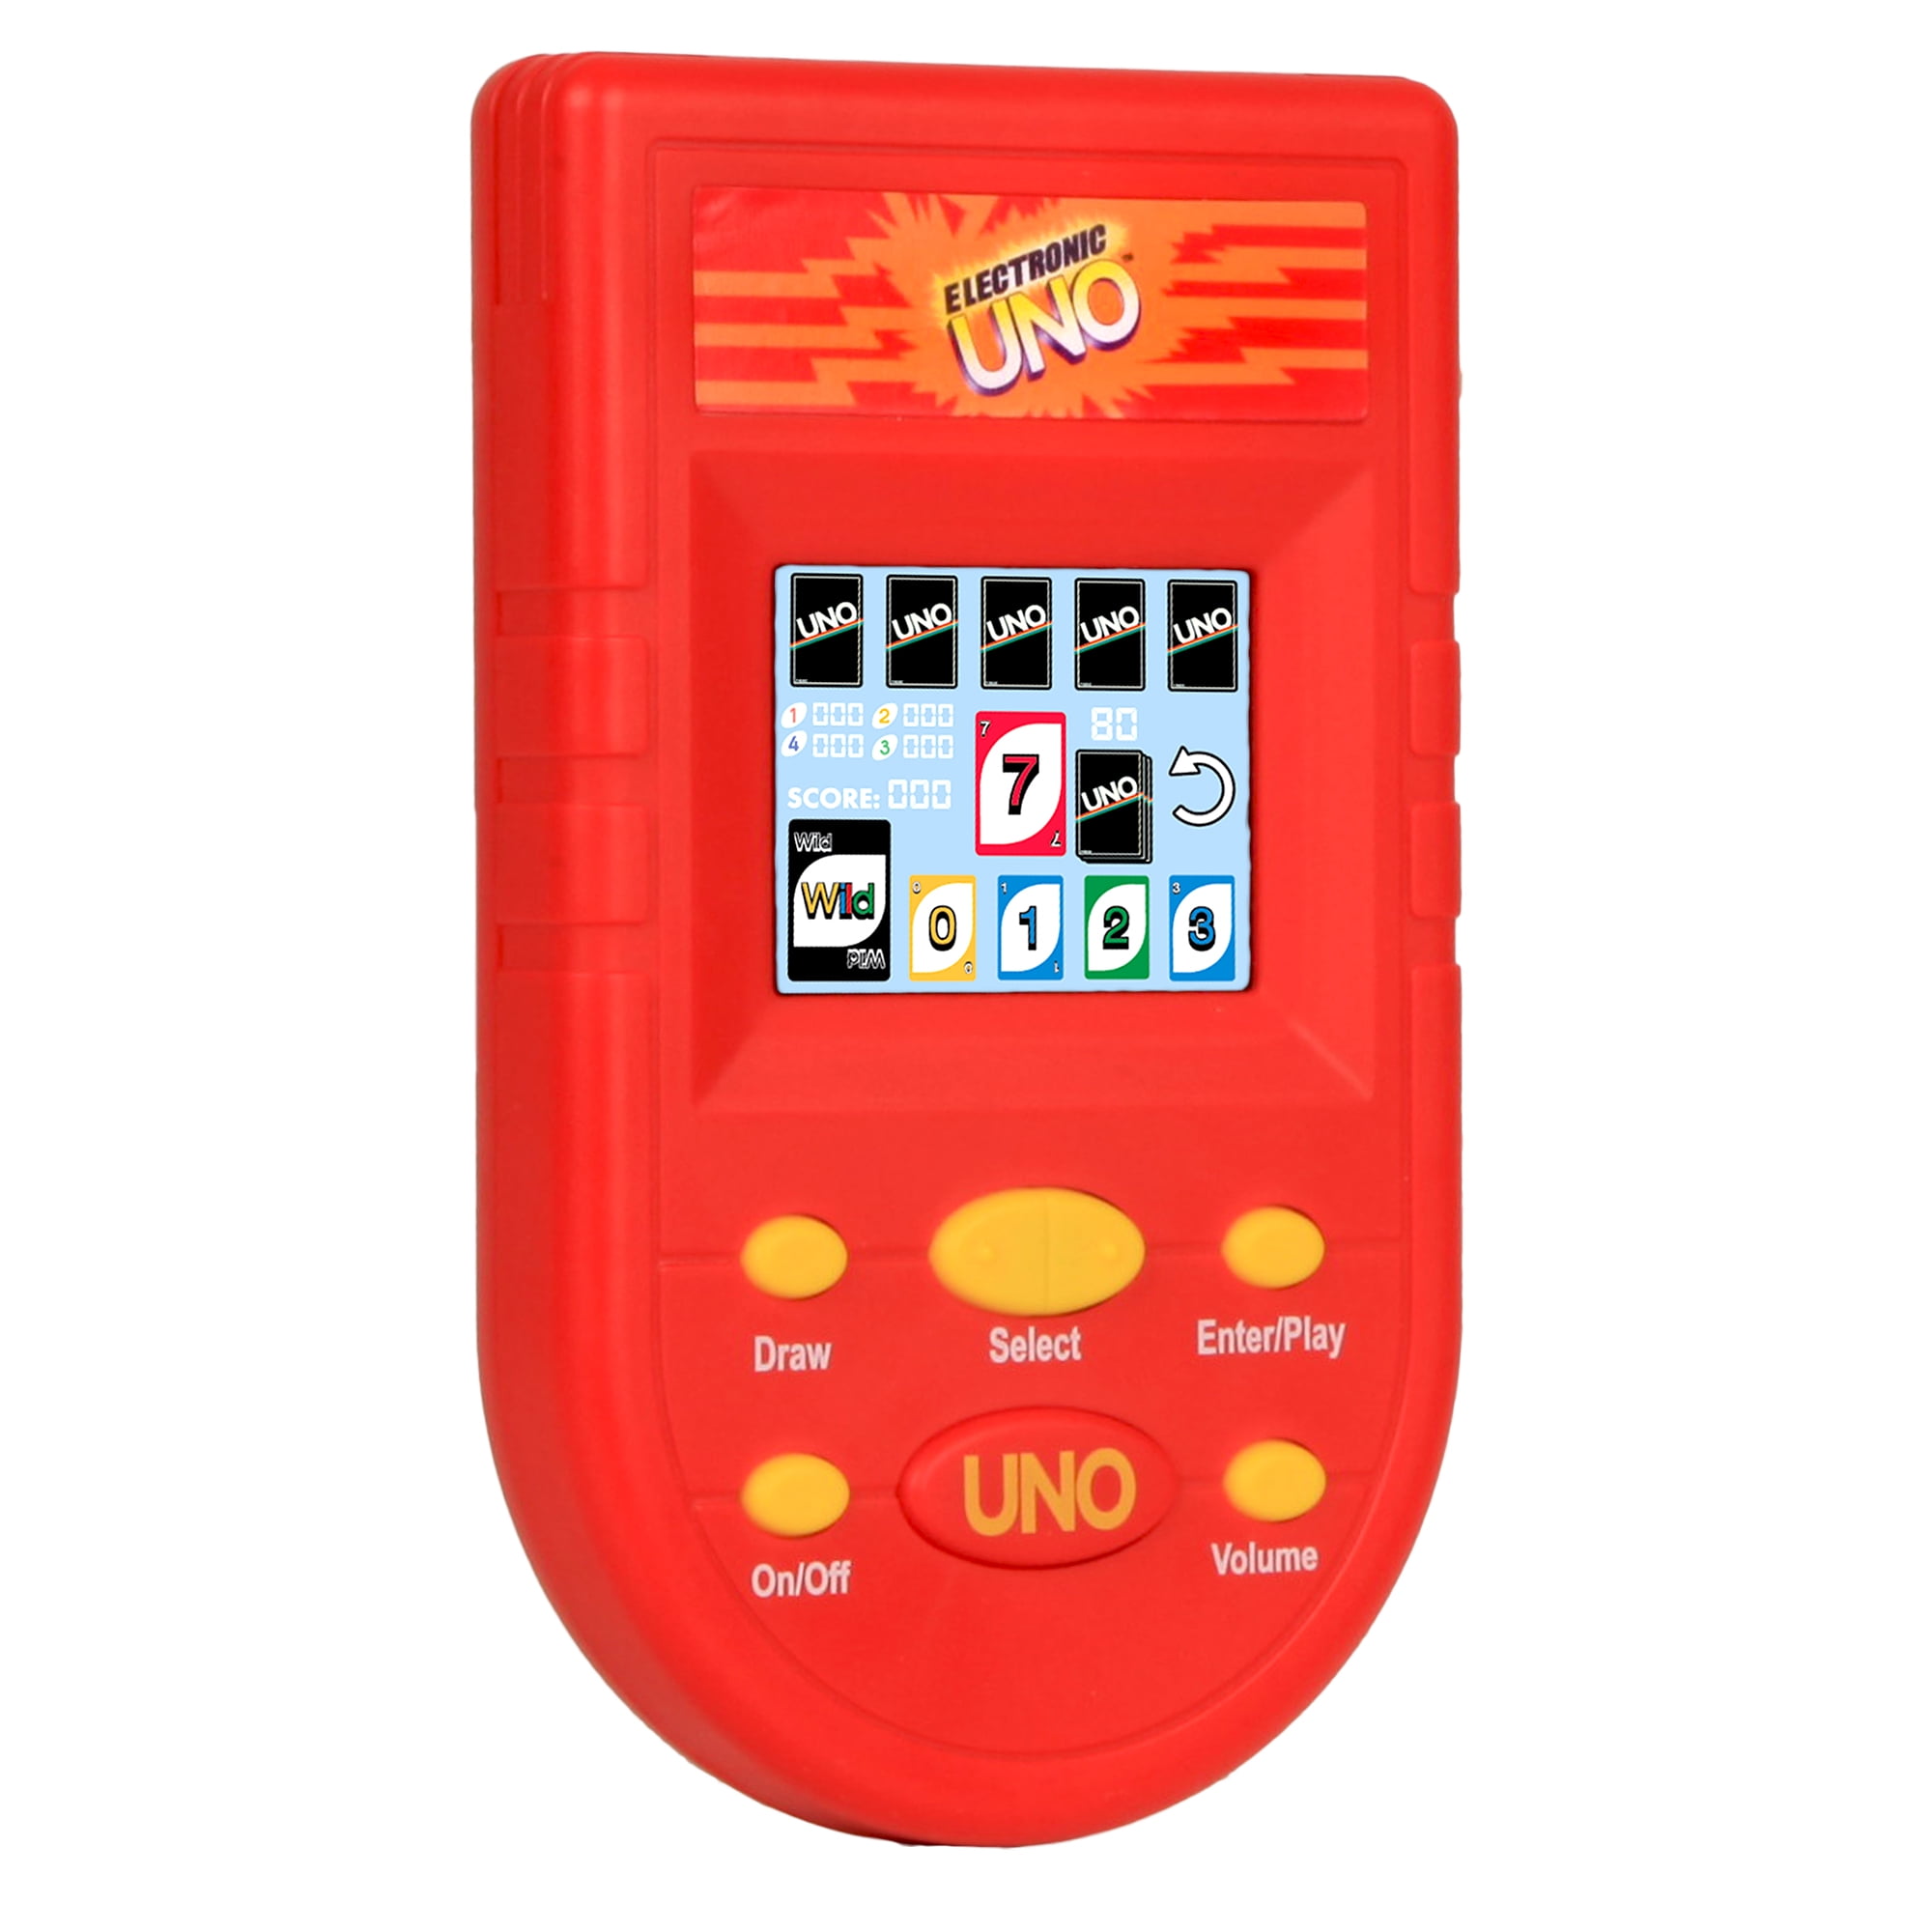 UNO ONLINE Play Uno Online on poki intense game 